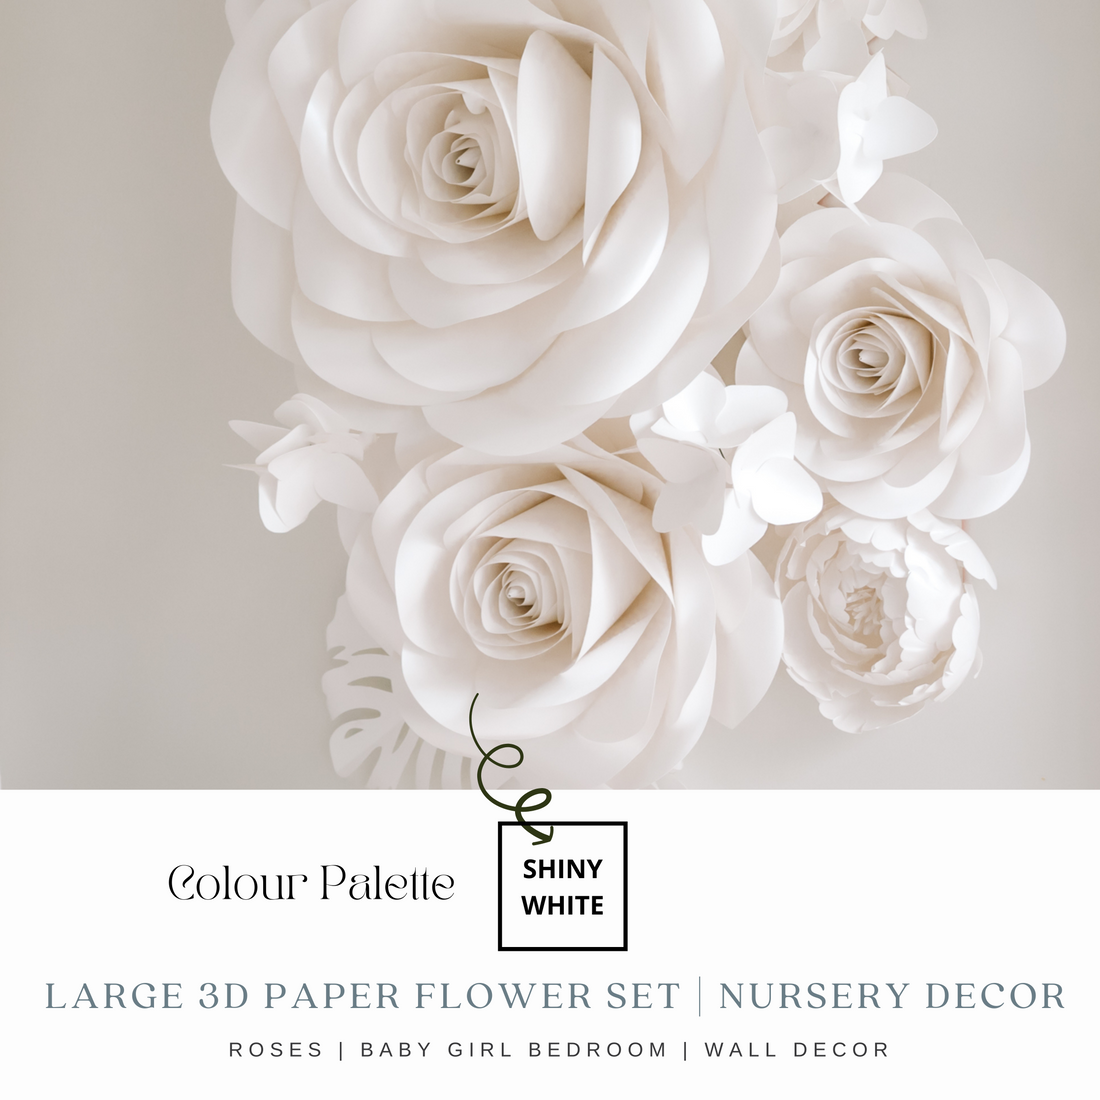 Dusty Pink, Blush Paper Flowers - Nursery Wall Paper Flowers - Blush Paper  Flower Set – Purely Paper Flowers